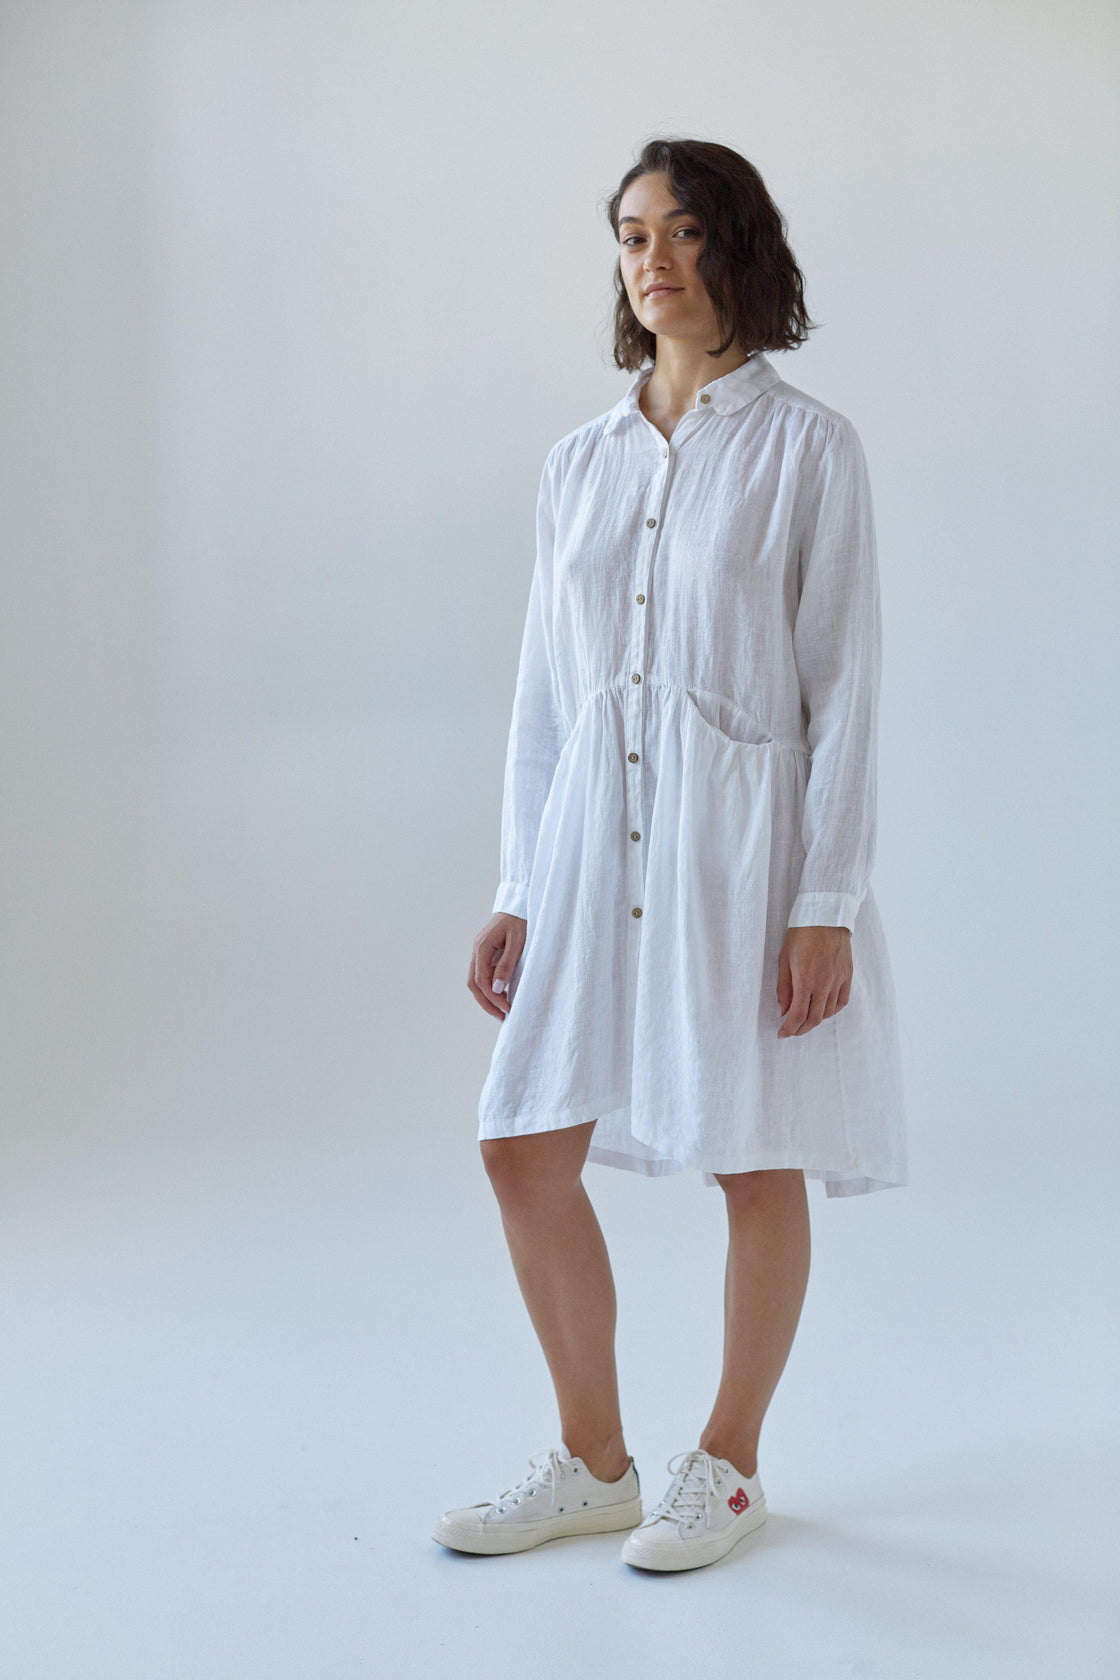 white linen dress with coconut buttons - Manufacture de Lin